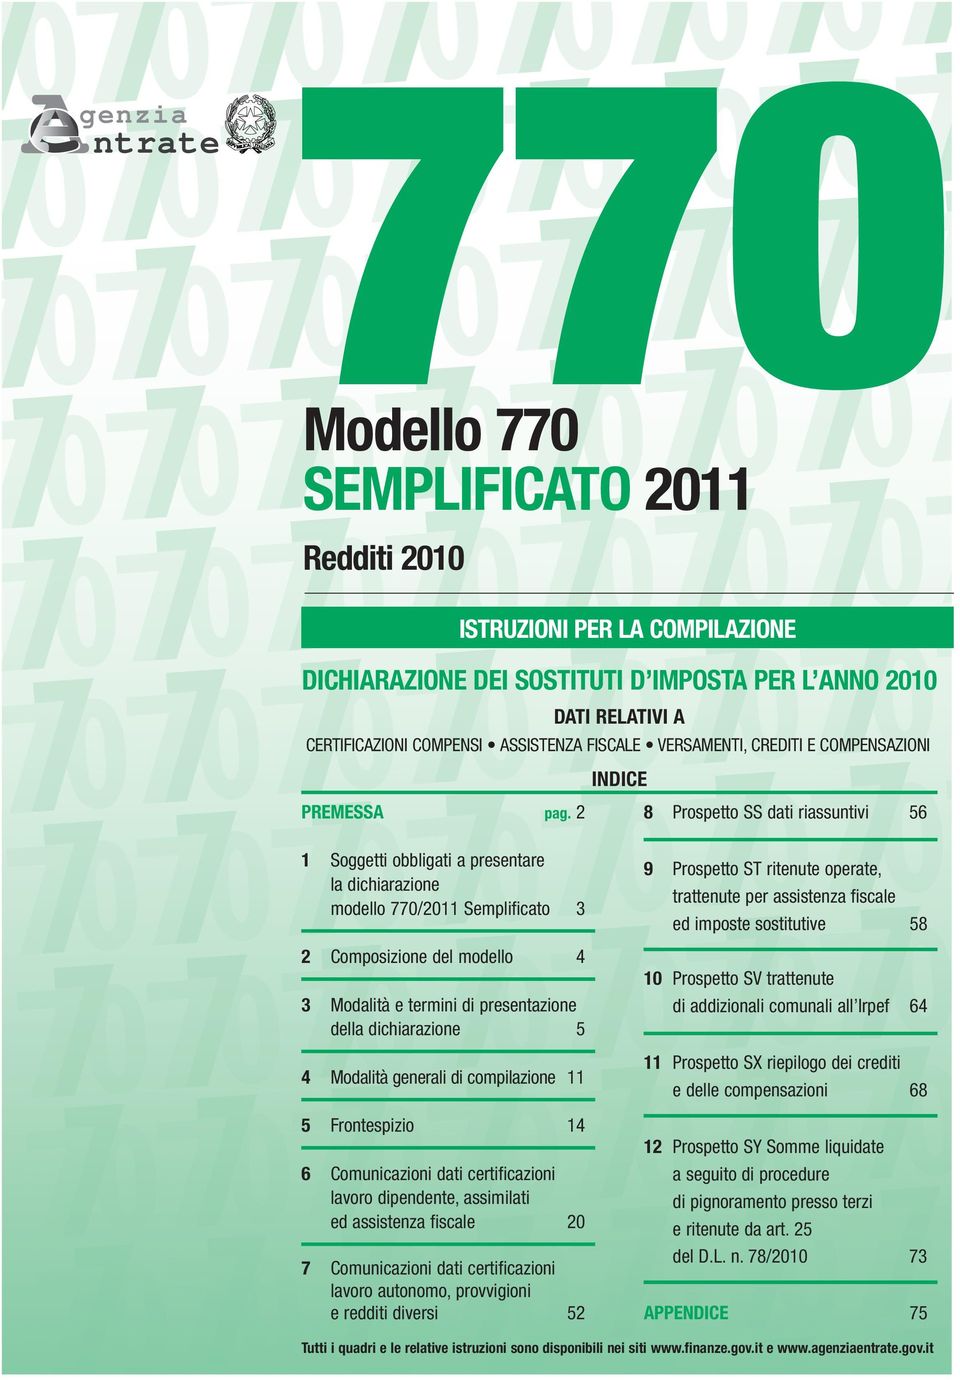 2 Soggetti obbligati a presentare la dichiarazione modello 770/2011 Semplificato 3 Composizione del modello 4 3 Modalità e termini di presentazione della dichiarazione 5 4 Modalità generali di